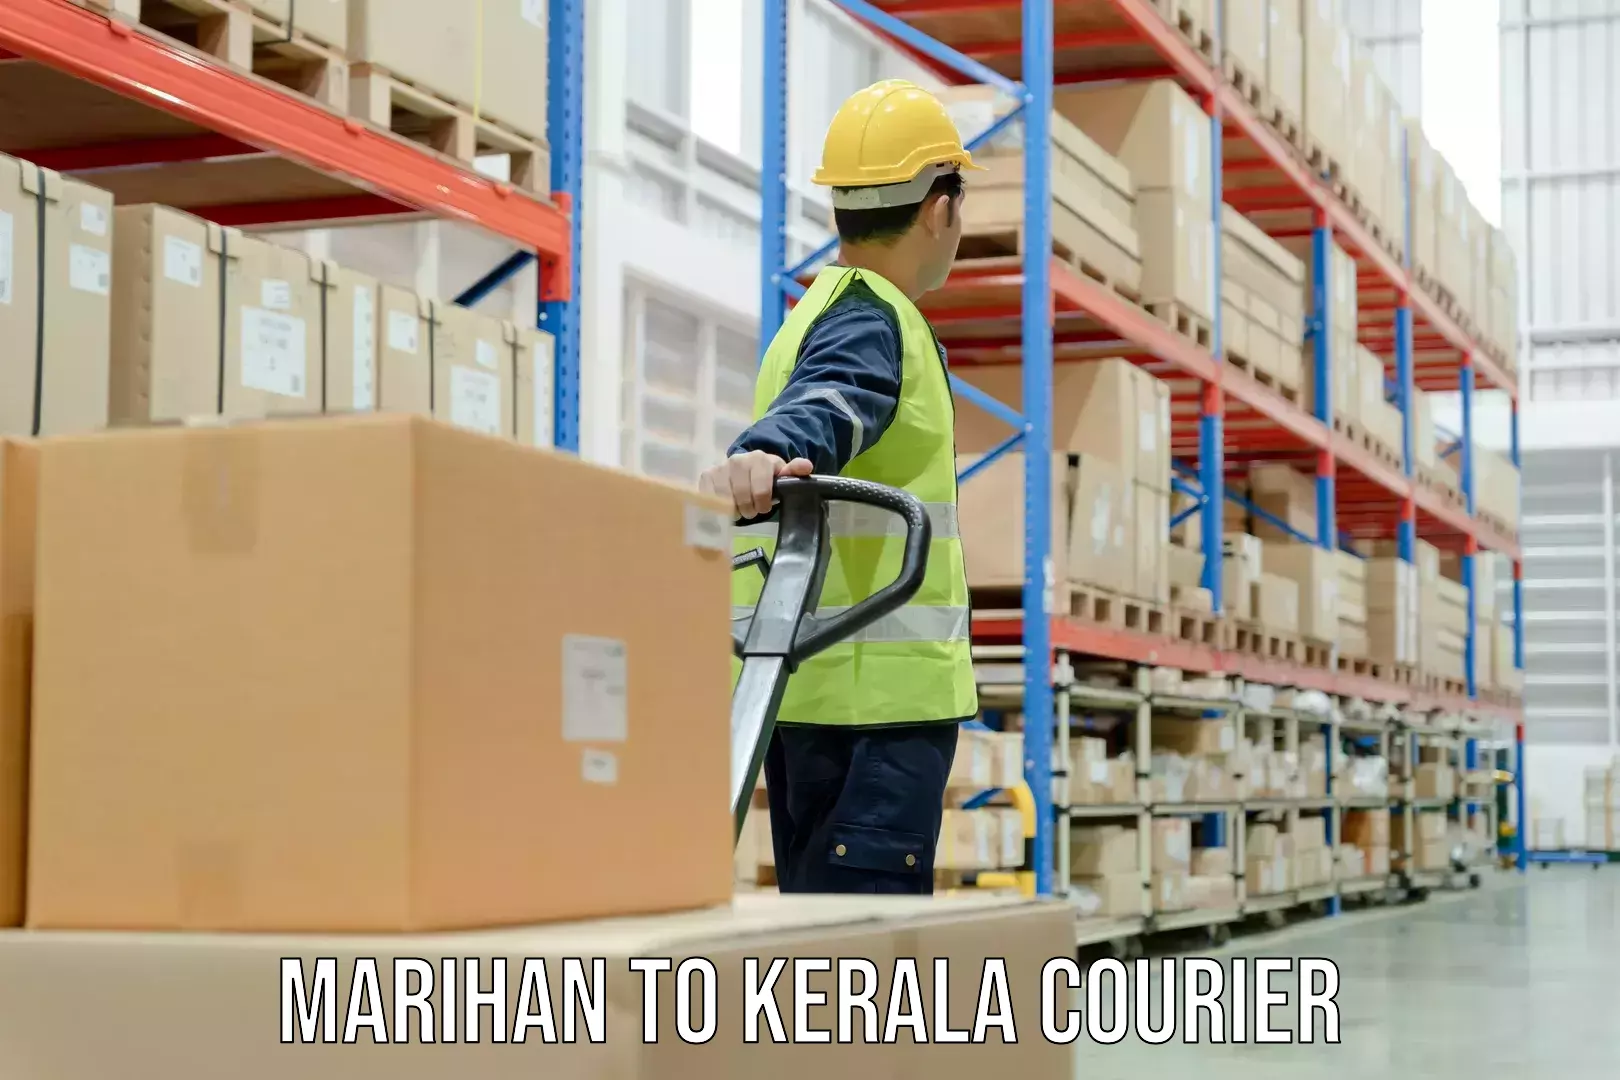 Return courier service Marihan to Perumbavoor